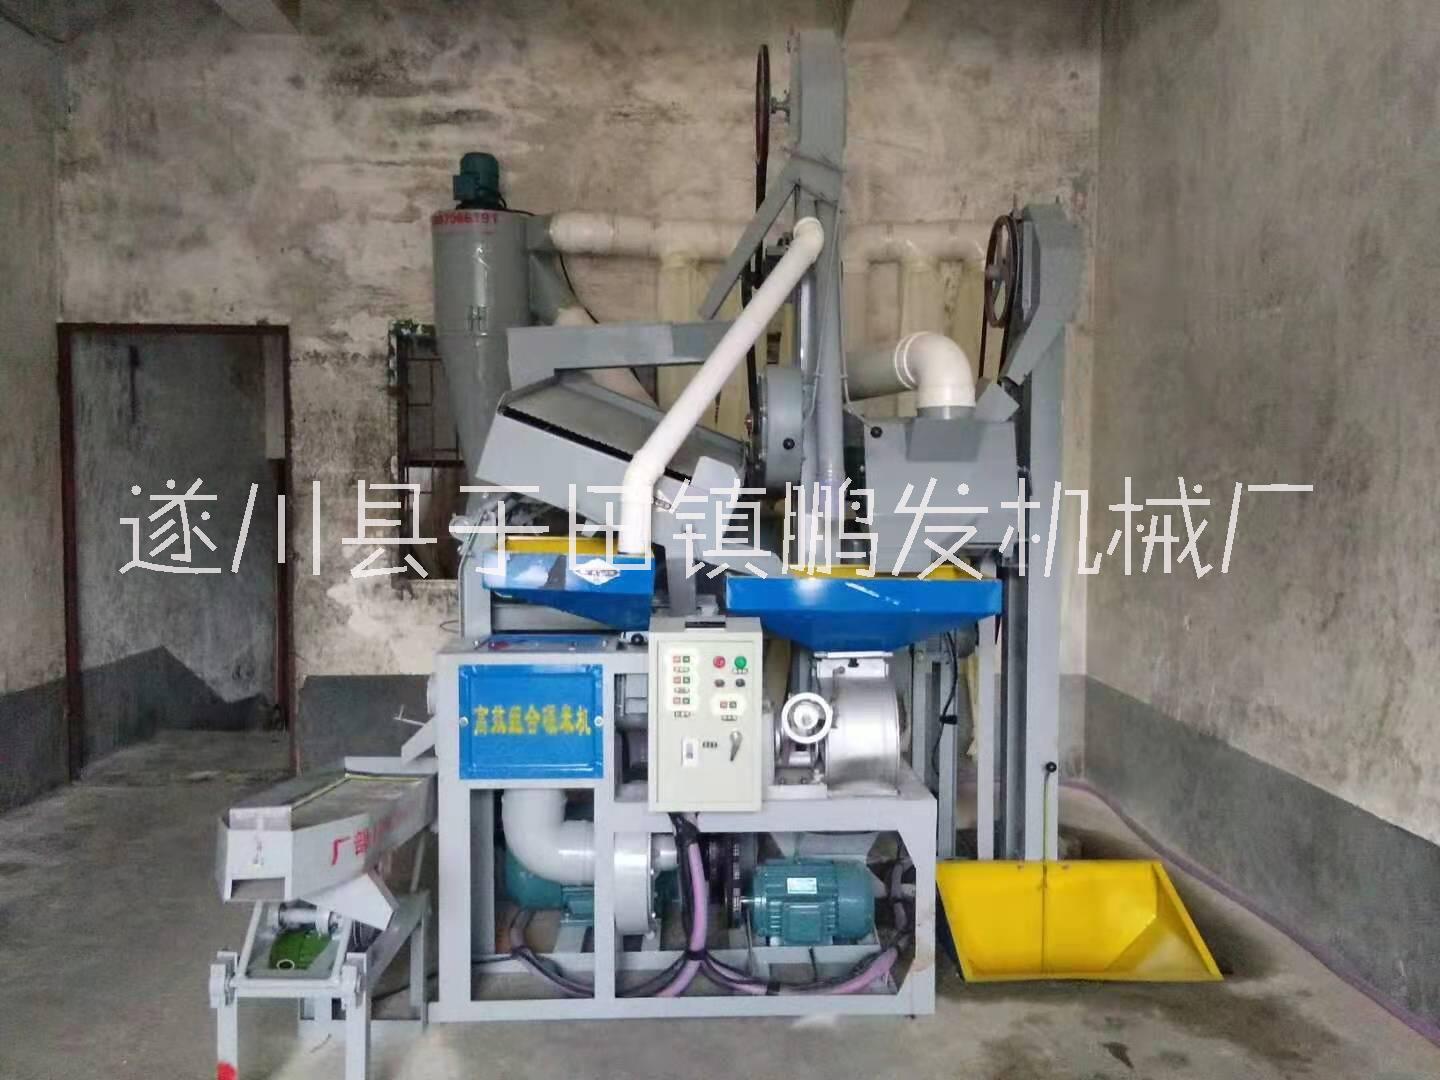 肇庆市20吨剥壳机价格 剥壳机生产厂家 低价出售剥壳机 现货批发图片